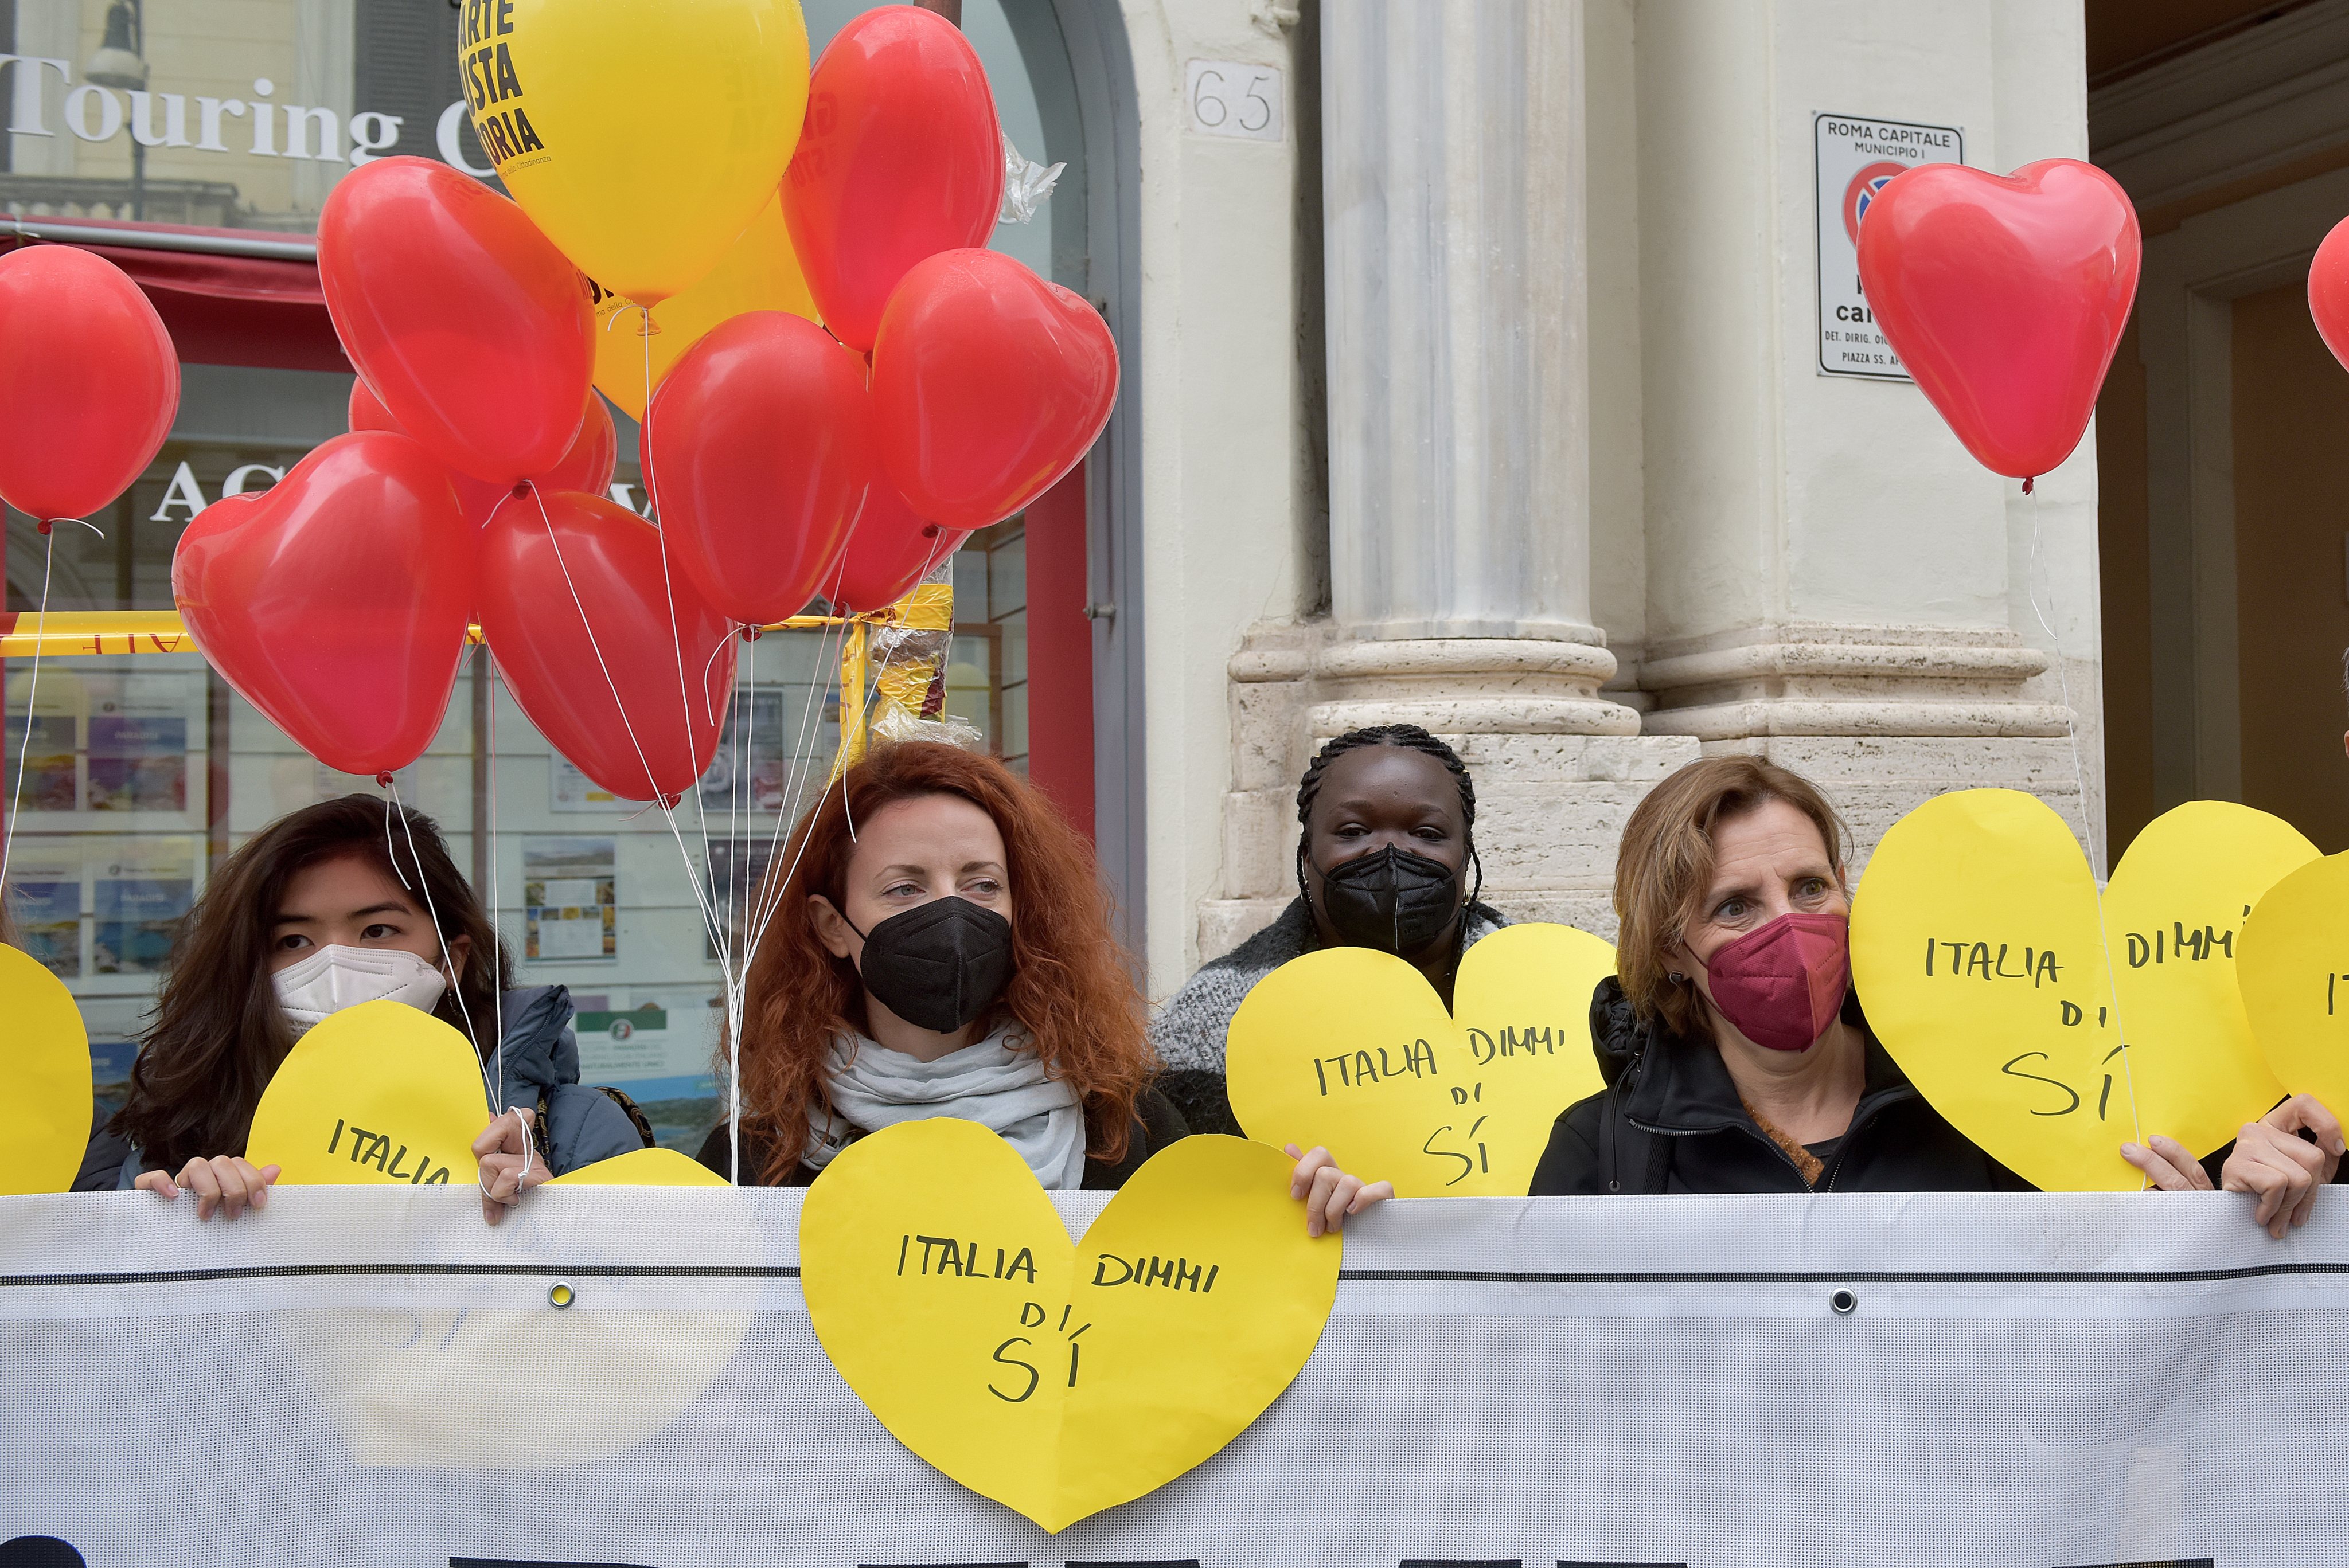 Celebração do Dia de São Valentim, também conhecido como Dia dos Namorados, na Itália, onde se realizou um protesto contra a lei que exige matrimónio, prova de ascendência italiana ou provas de residência para se ser um cidadão italiano